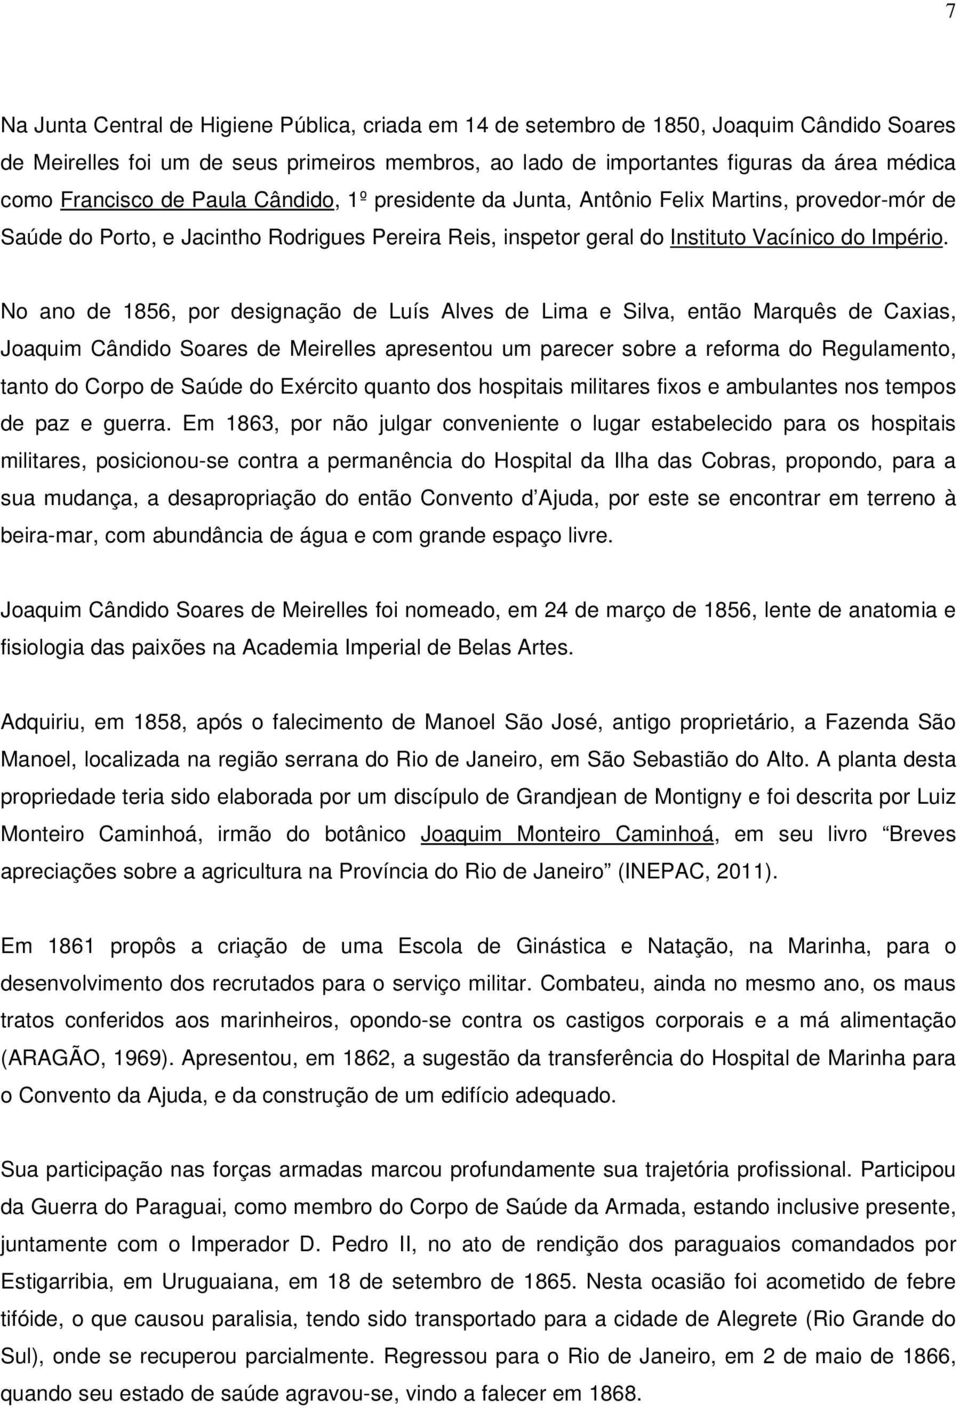 No ano de 1856, por designação de Luís Alves de Lima e Silva, então Marquês de Caxias, Joaquim Cândido Soares de Meirelles apresentou um parecer sobre a reforma do Regulamento, tanto do Corpo de